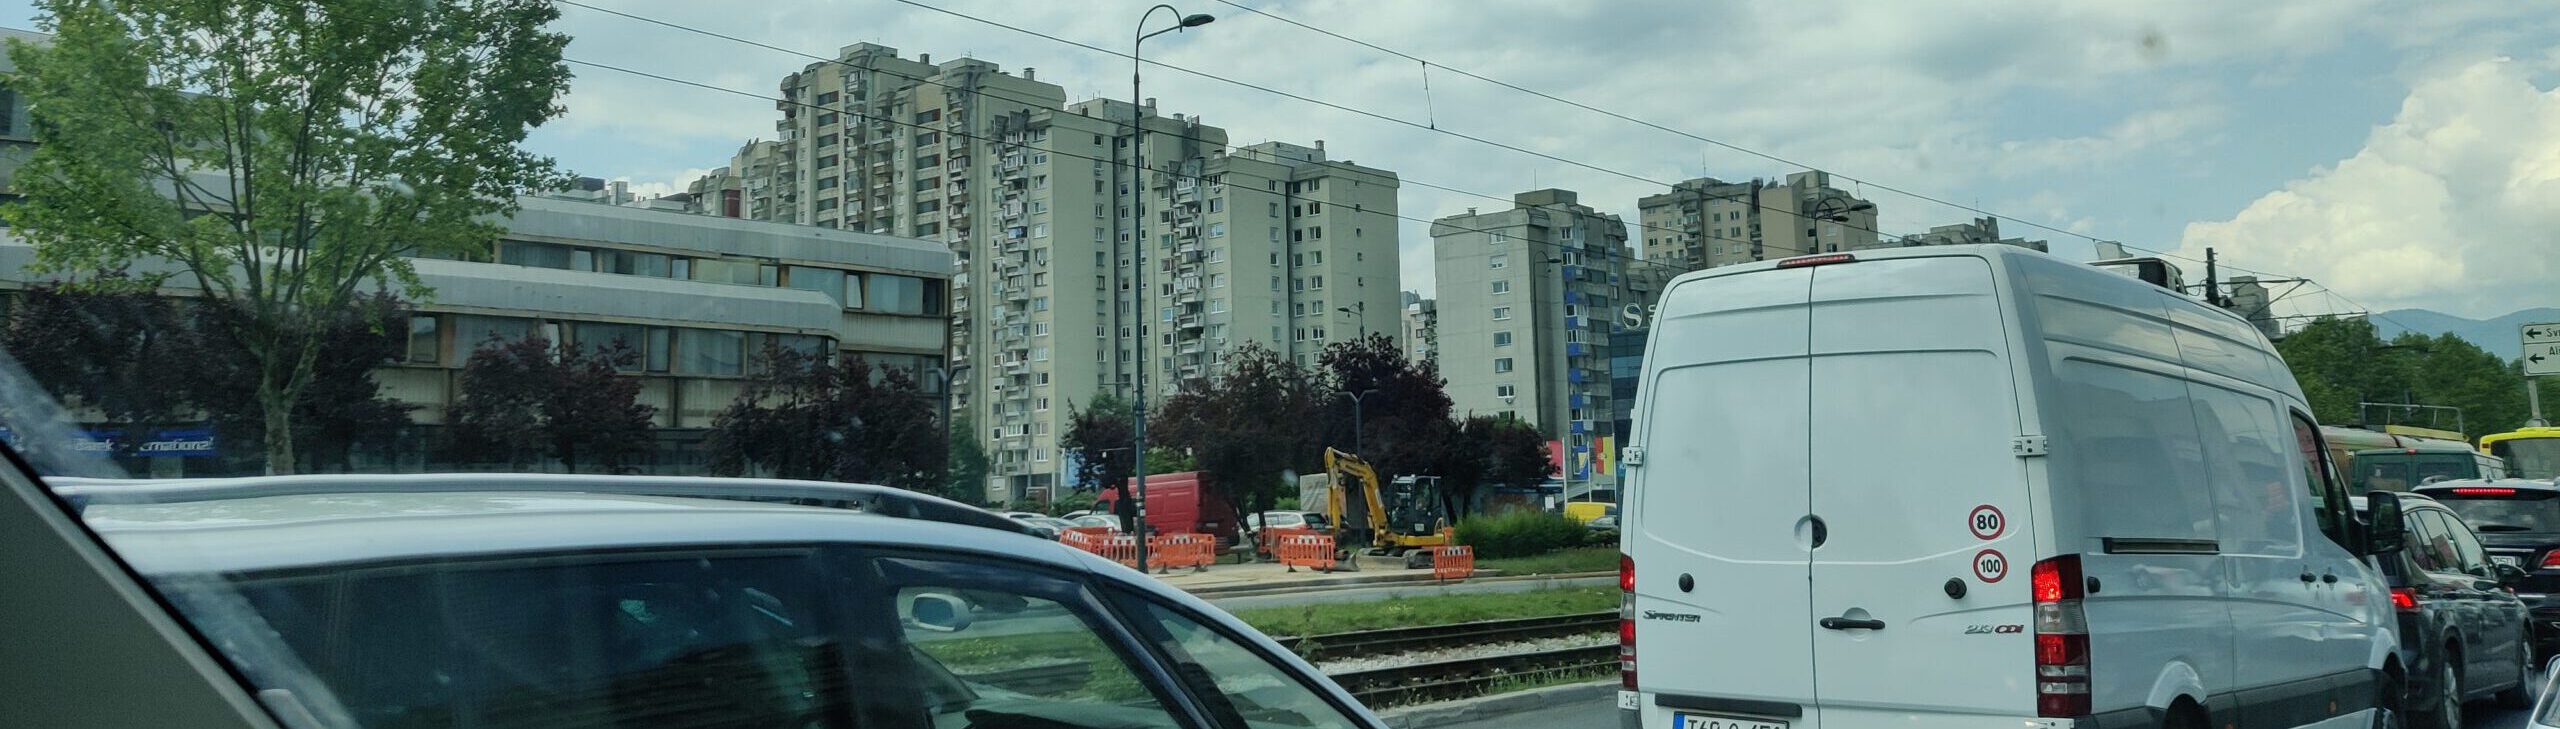 Sarajevo Plattenbauten